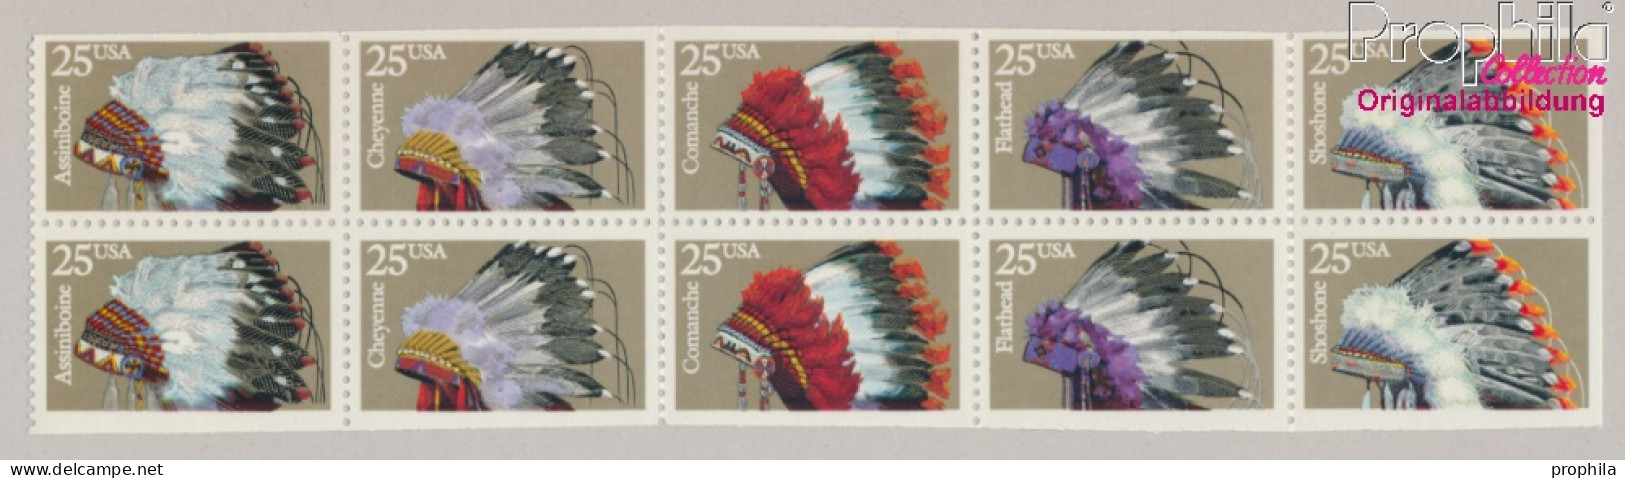 USA 2098-2102 Zehnerblock (kompl.Ausg.) Postfrisch 1990 Indianer Kopfschmuck (10368265 - Ungebraucht